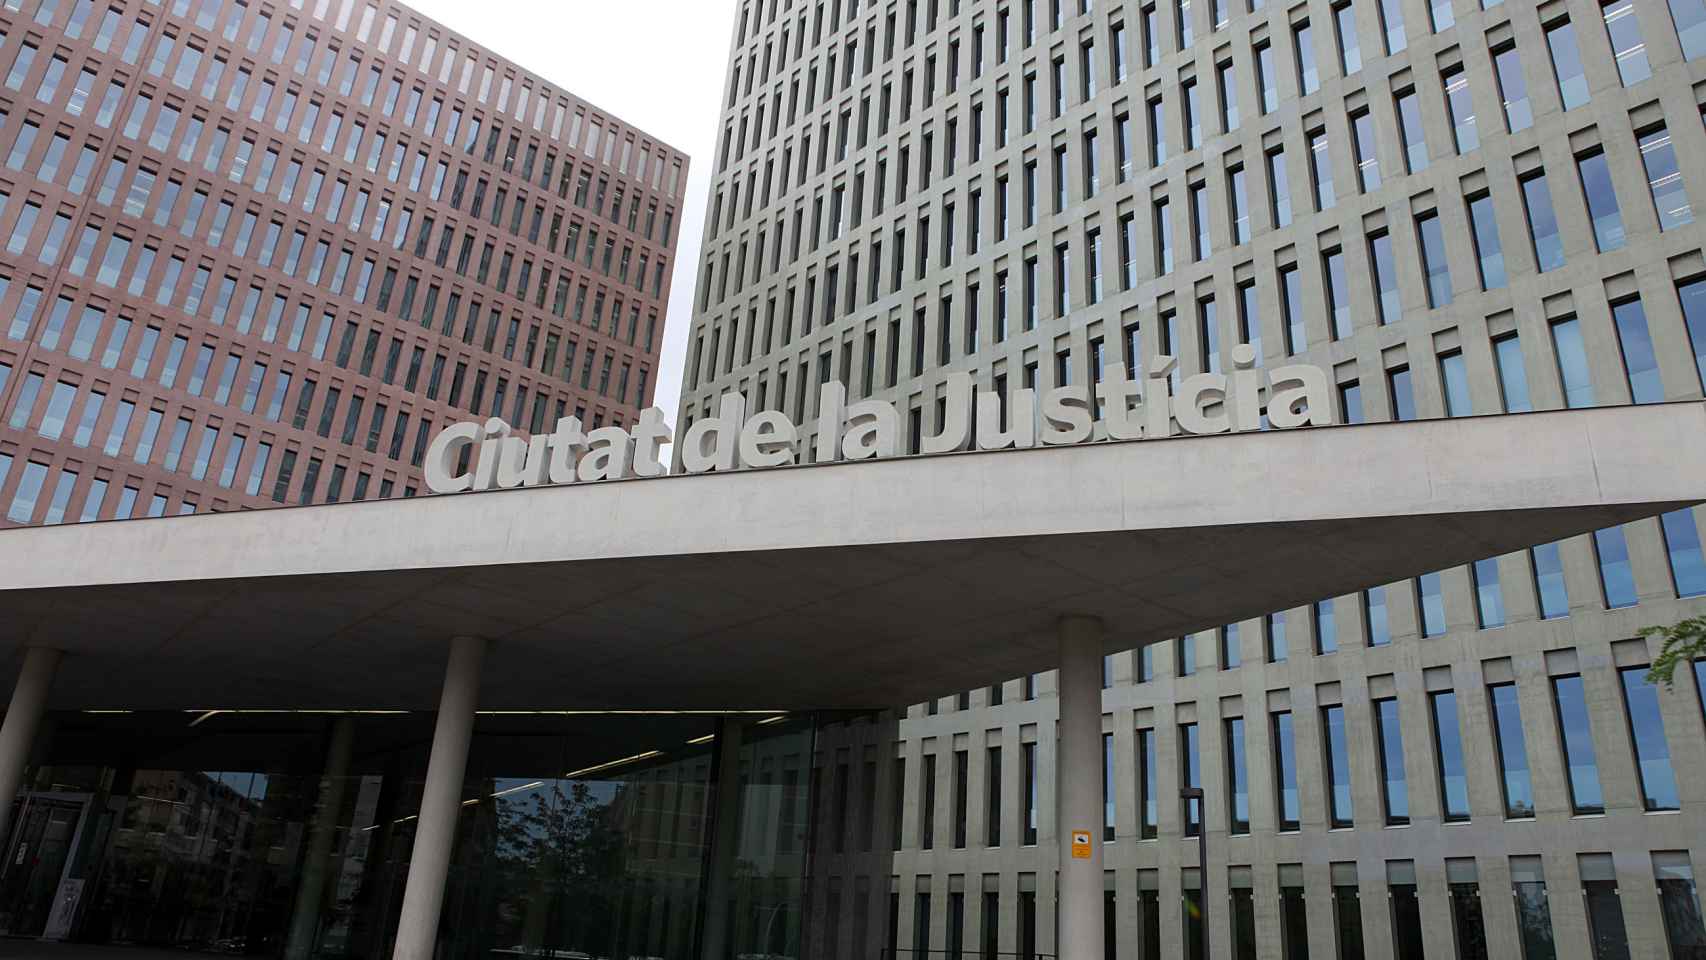 El exterior de la Ciutat de la Justícia de Barcelona y L'Hospitalet de Llobregat, donde los forenses identifican las víctimas de los atentados terroristas / CG